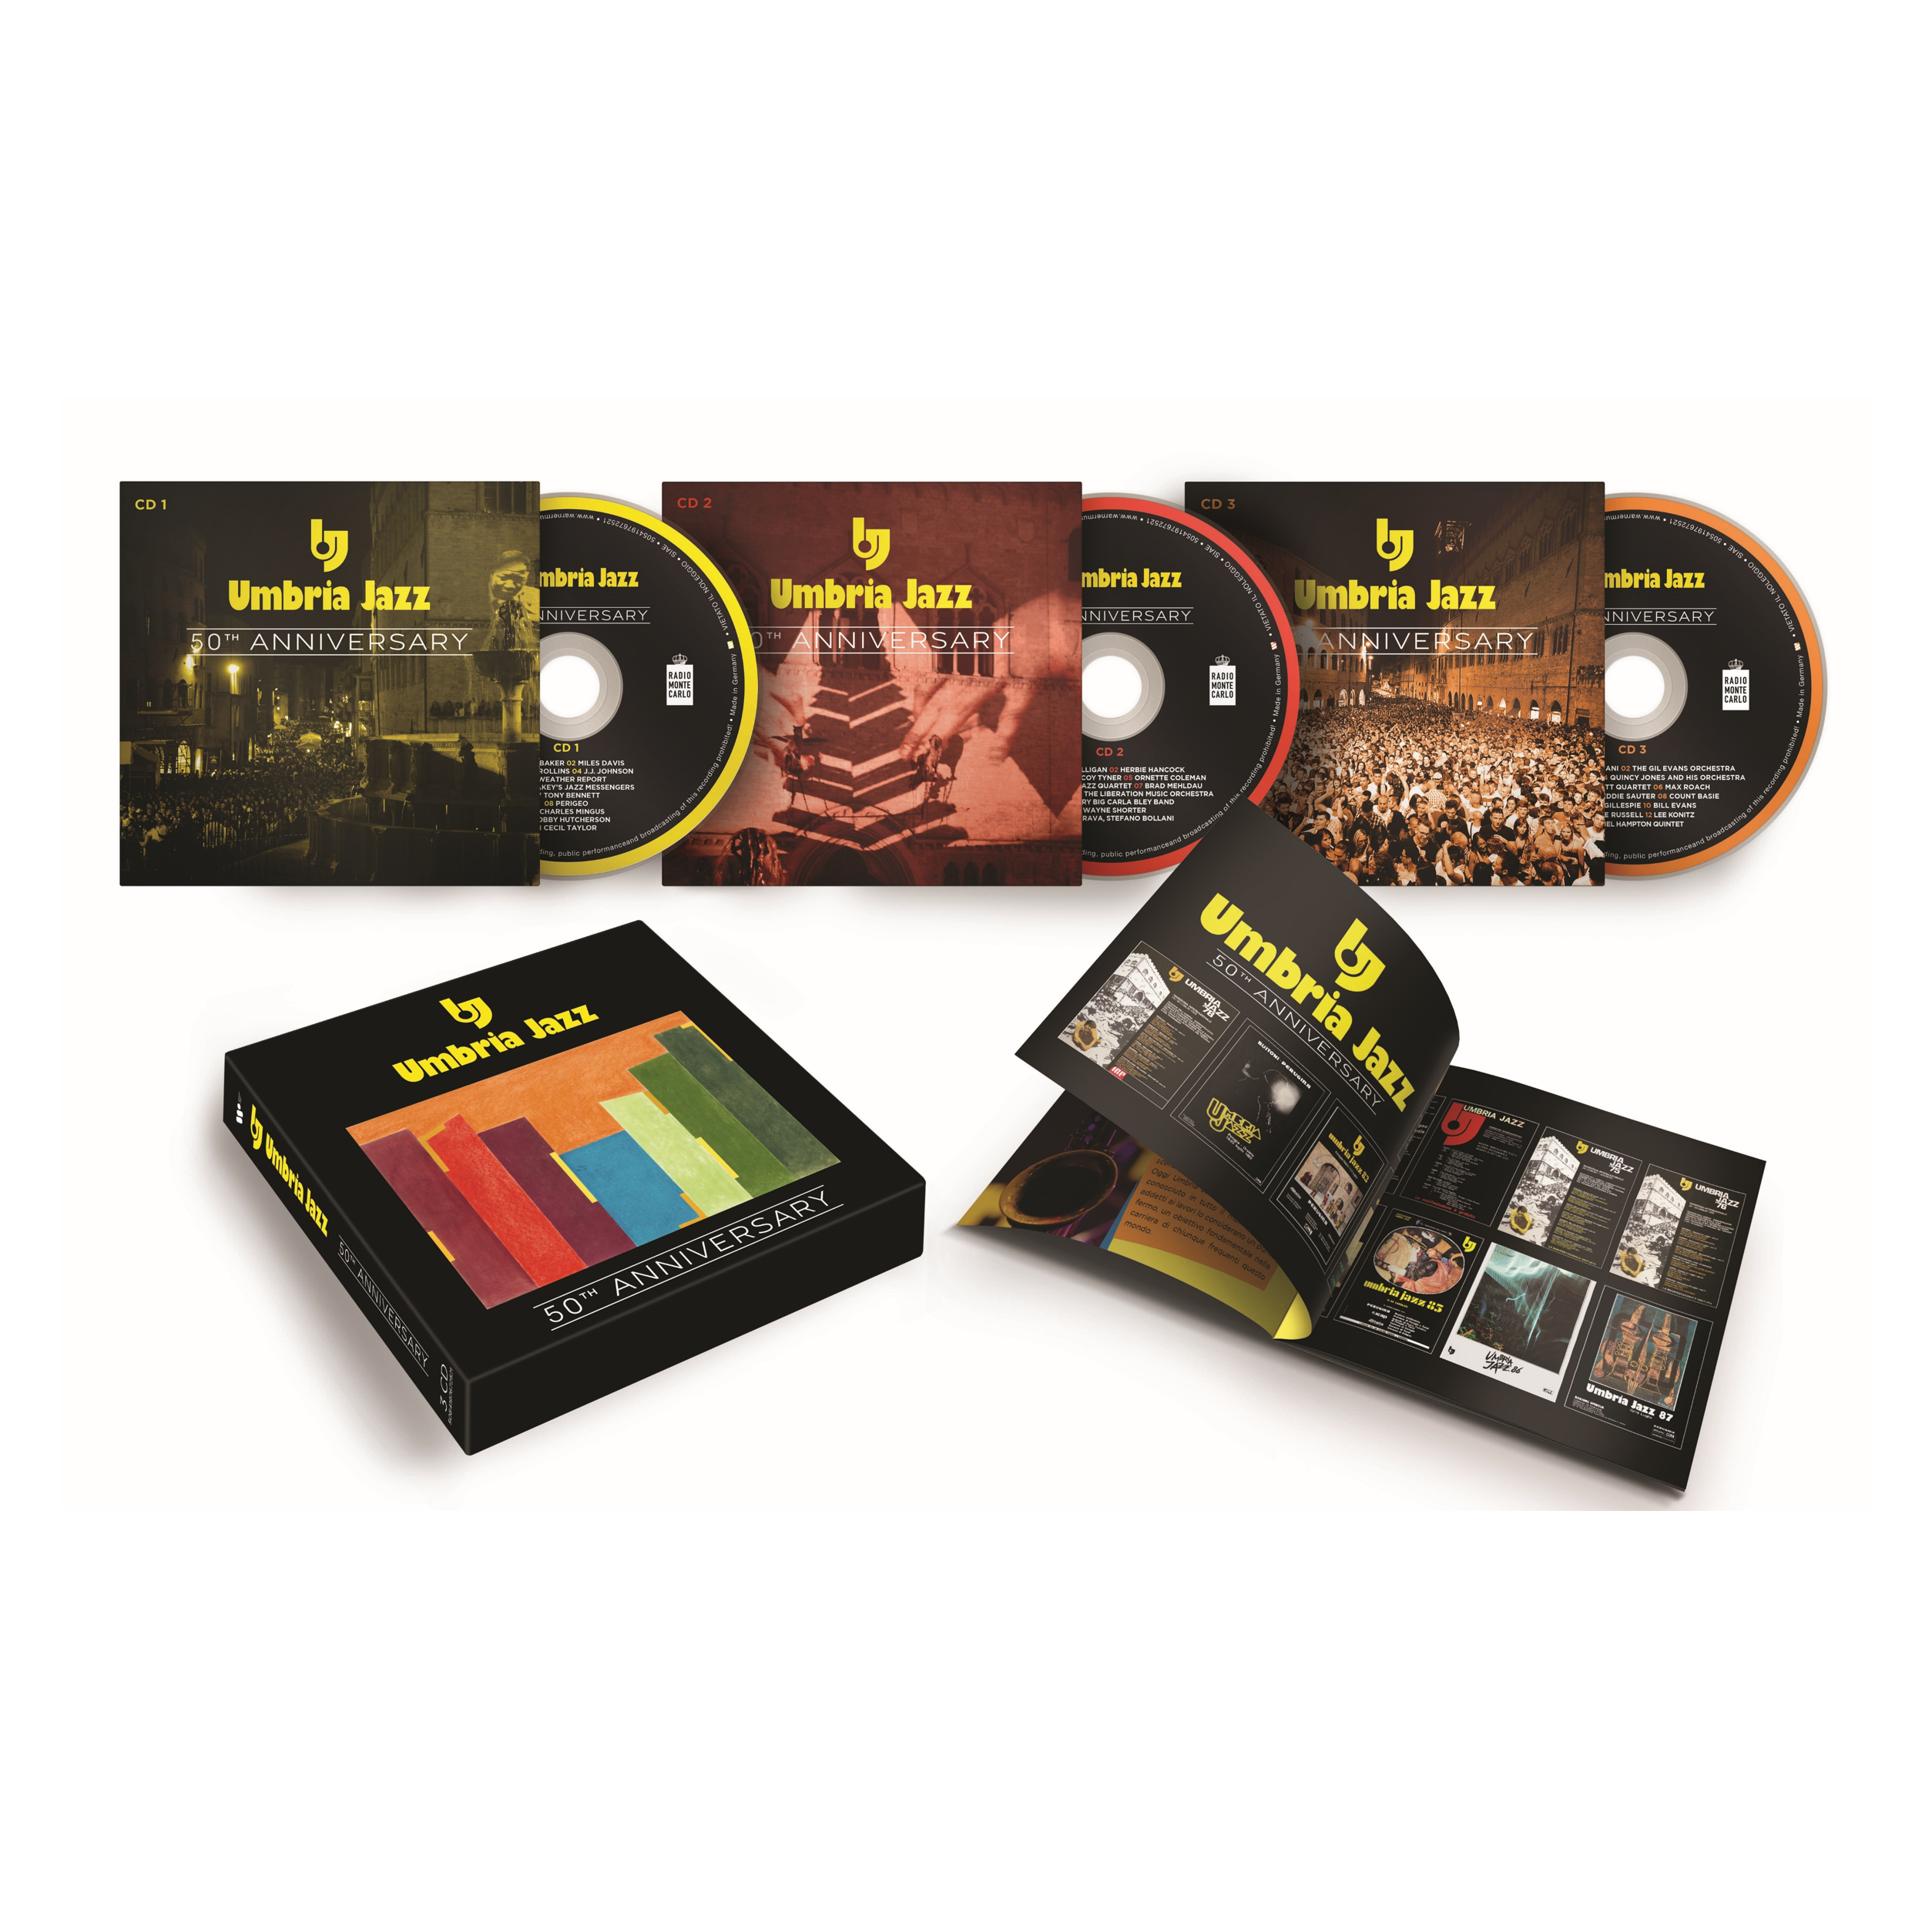 Umbria Jazz 2023 (50th Anniversary) (3CD)